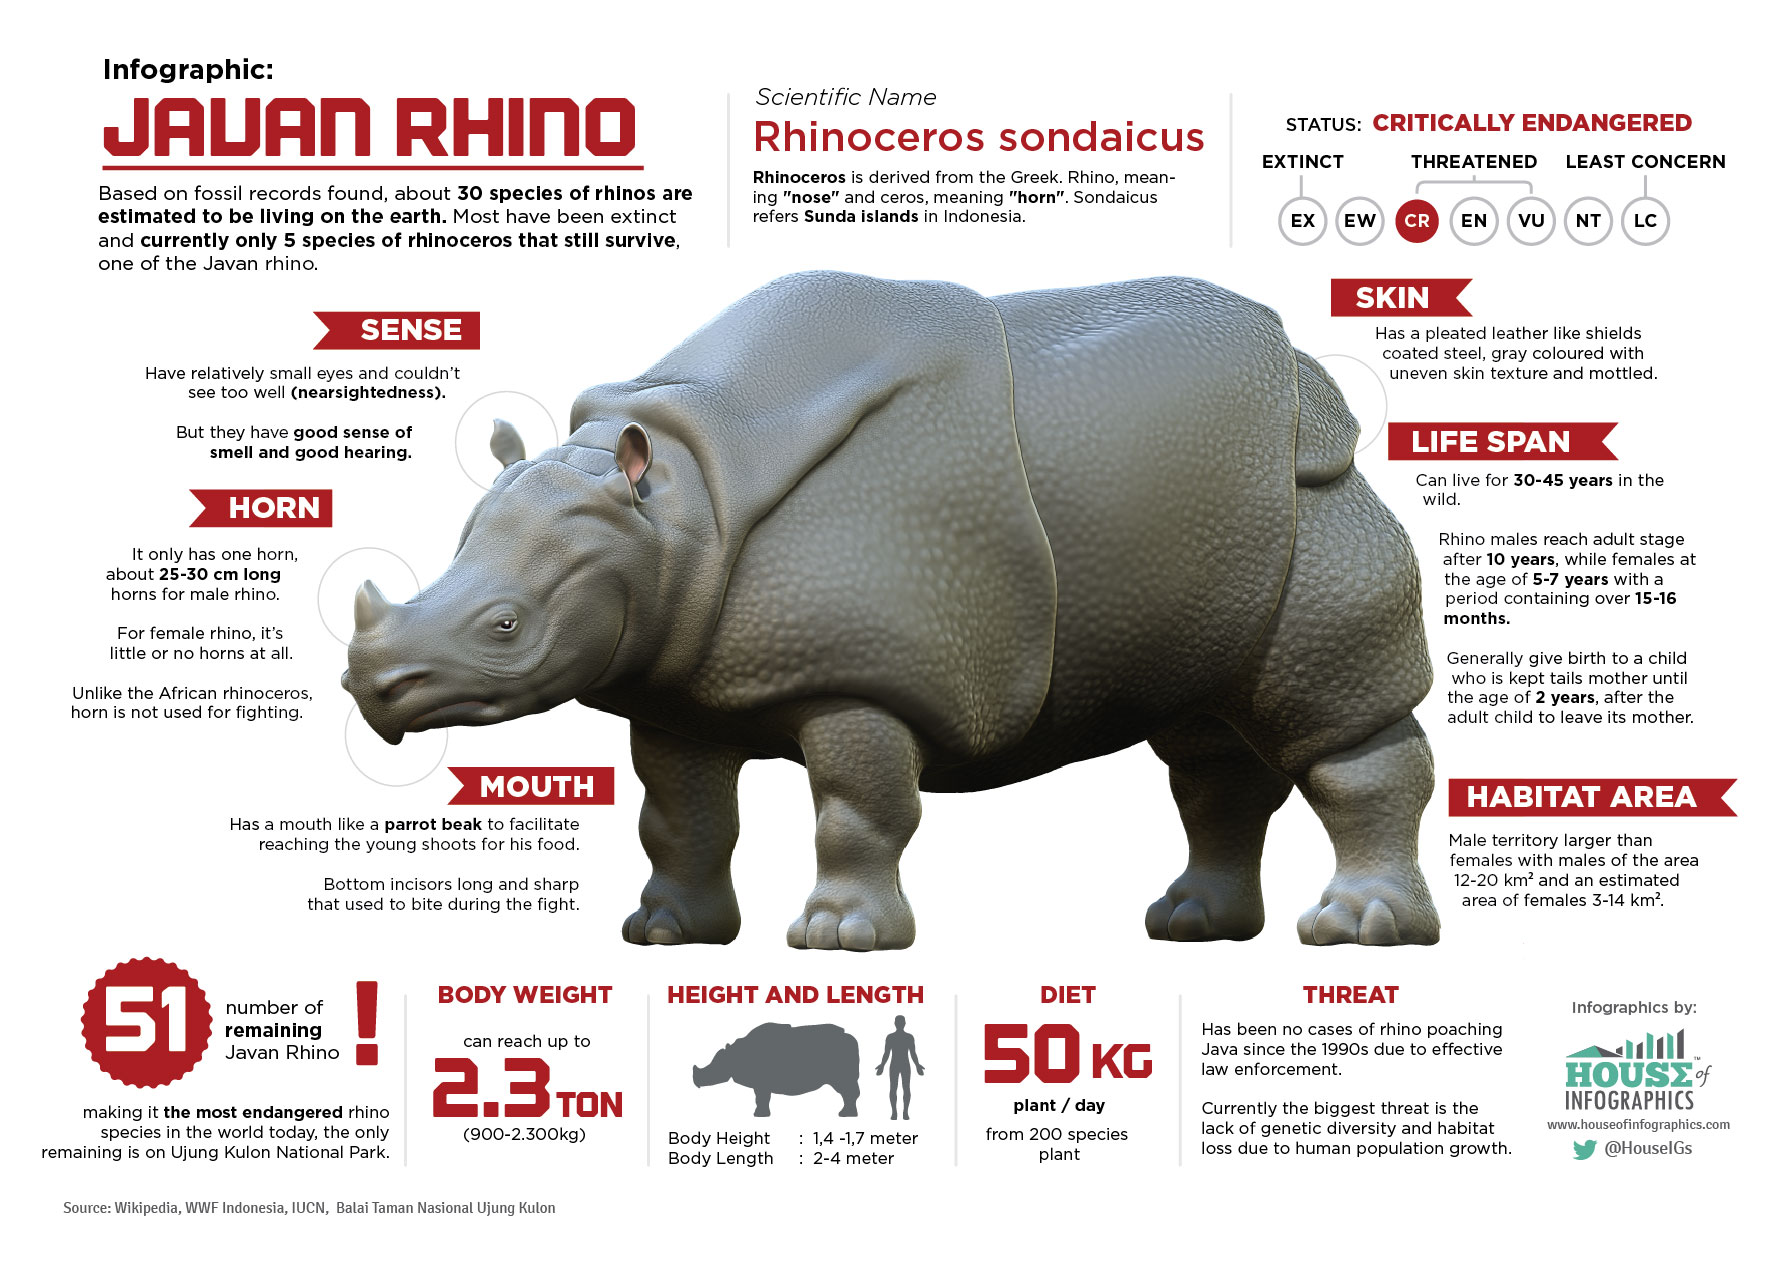 rhinoceros food web